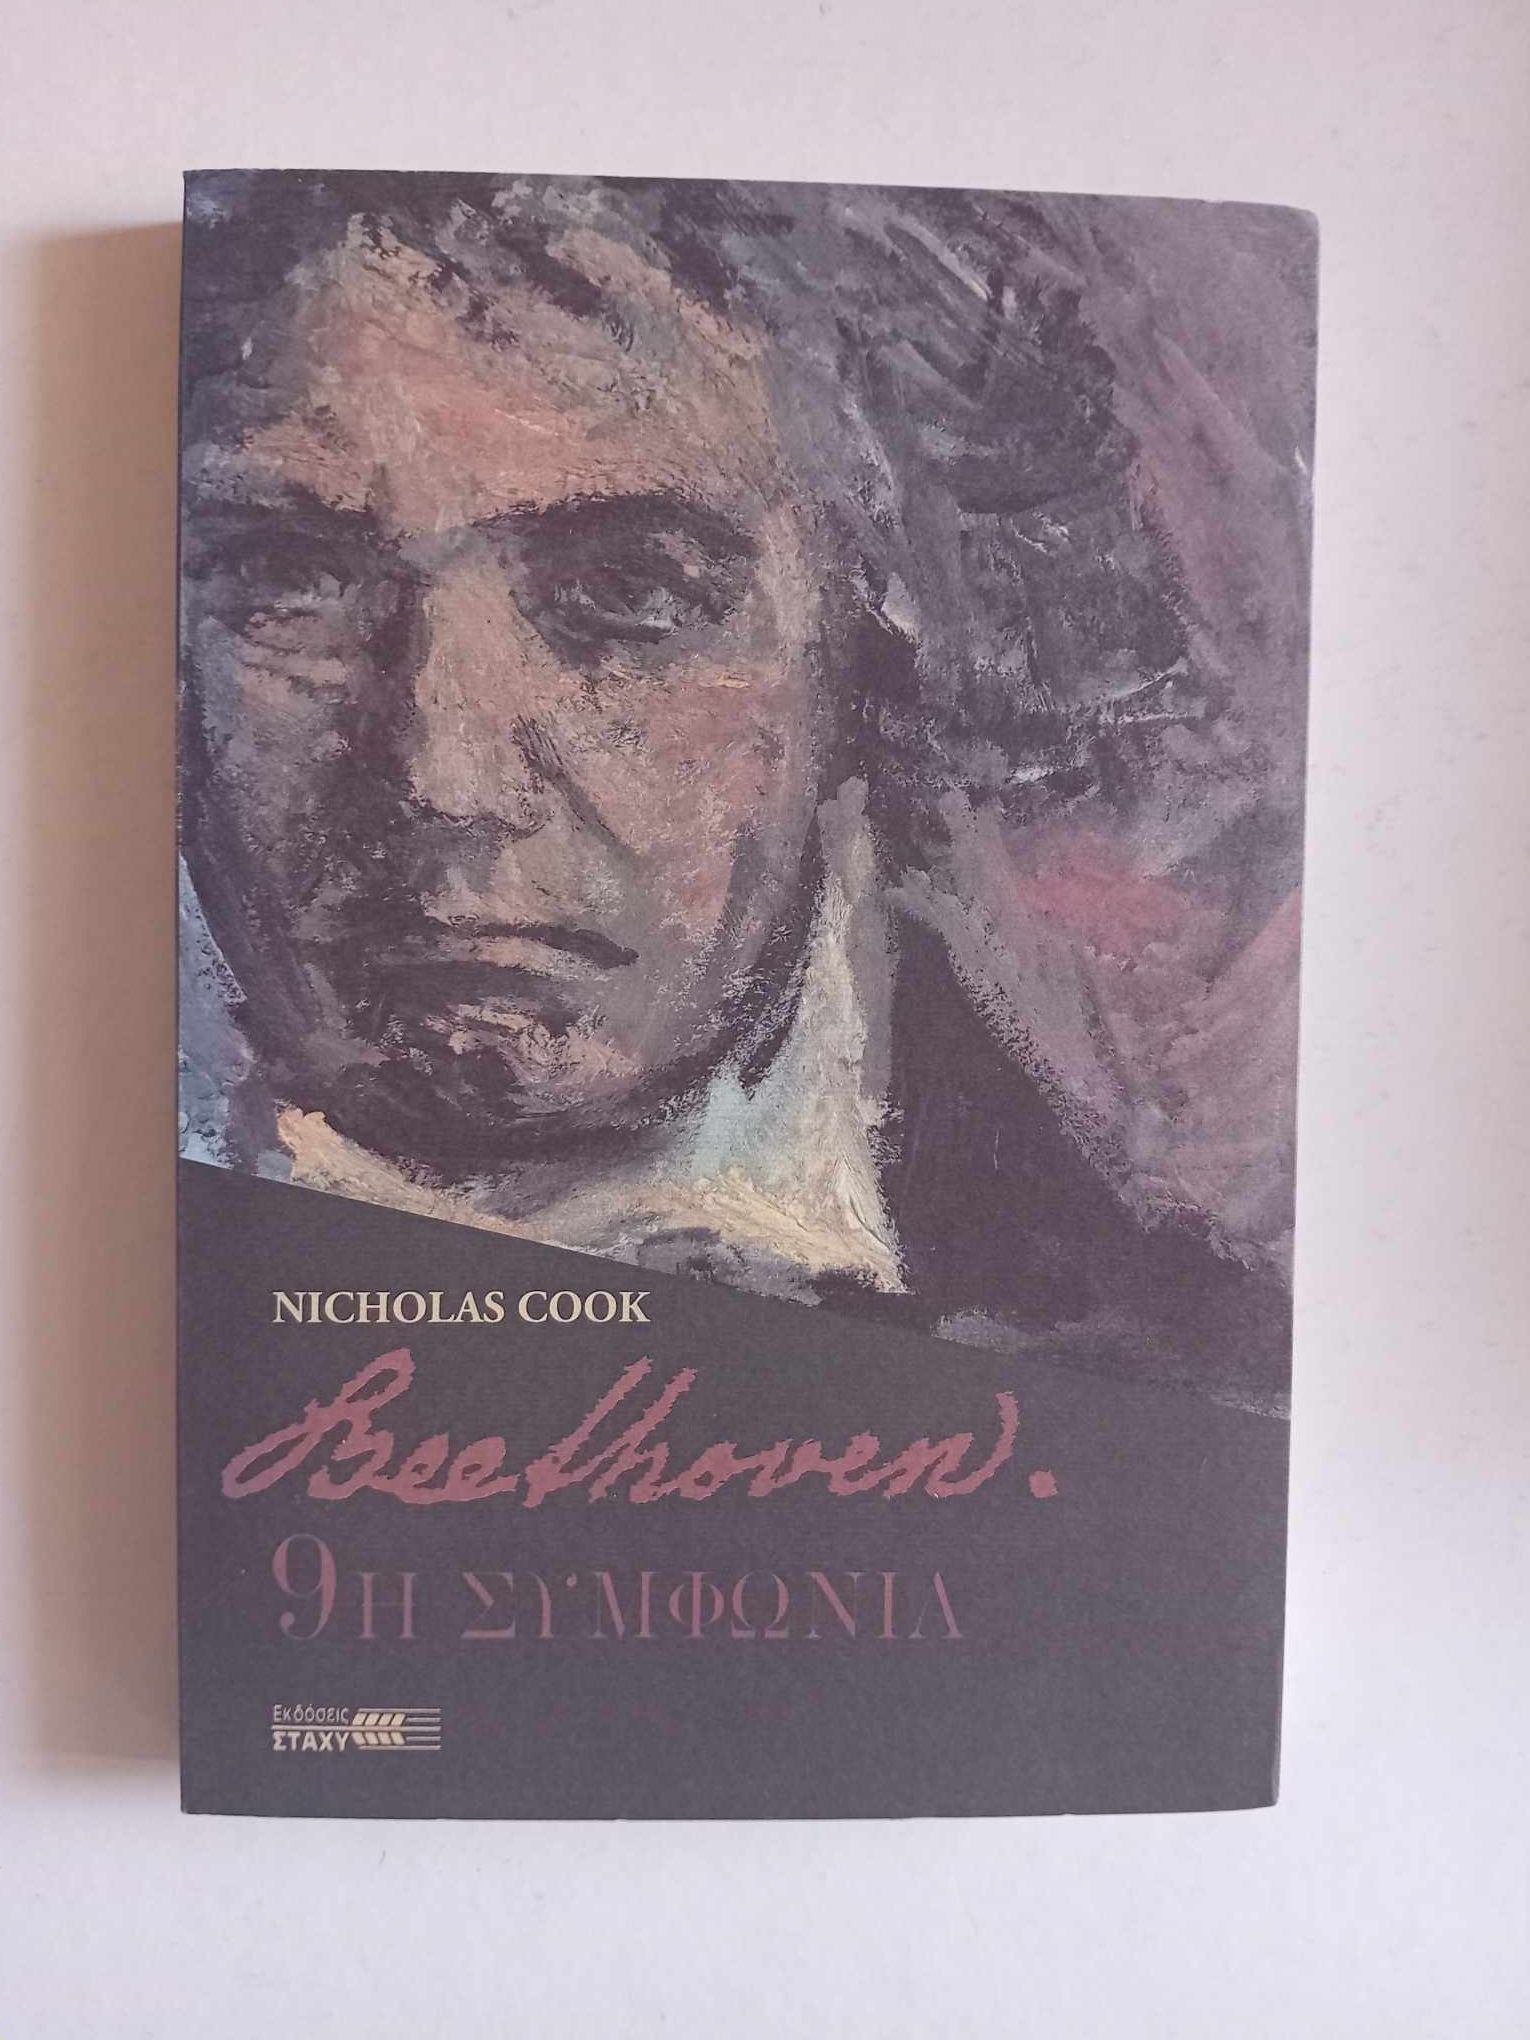 9η συμφωνία Beethoven  Nicholas Cook Στάχυ 1996